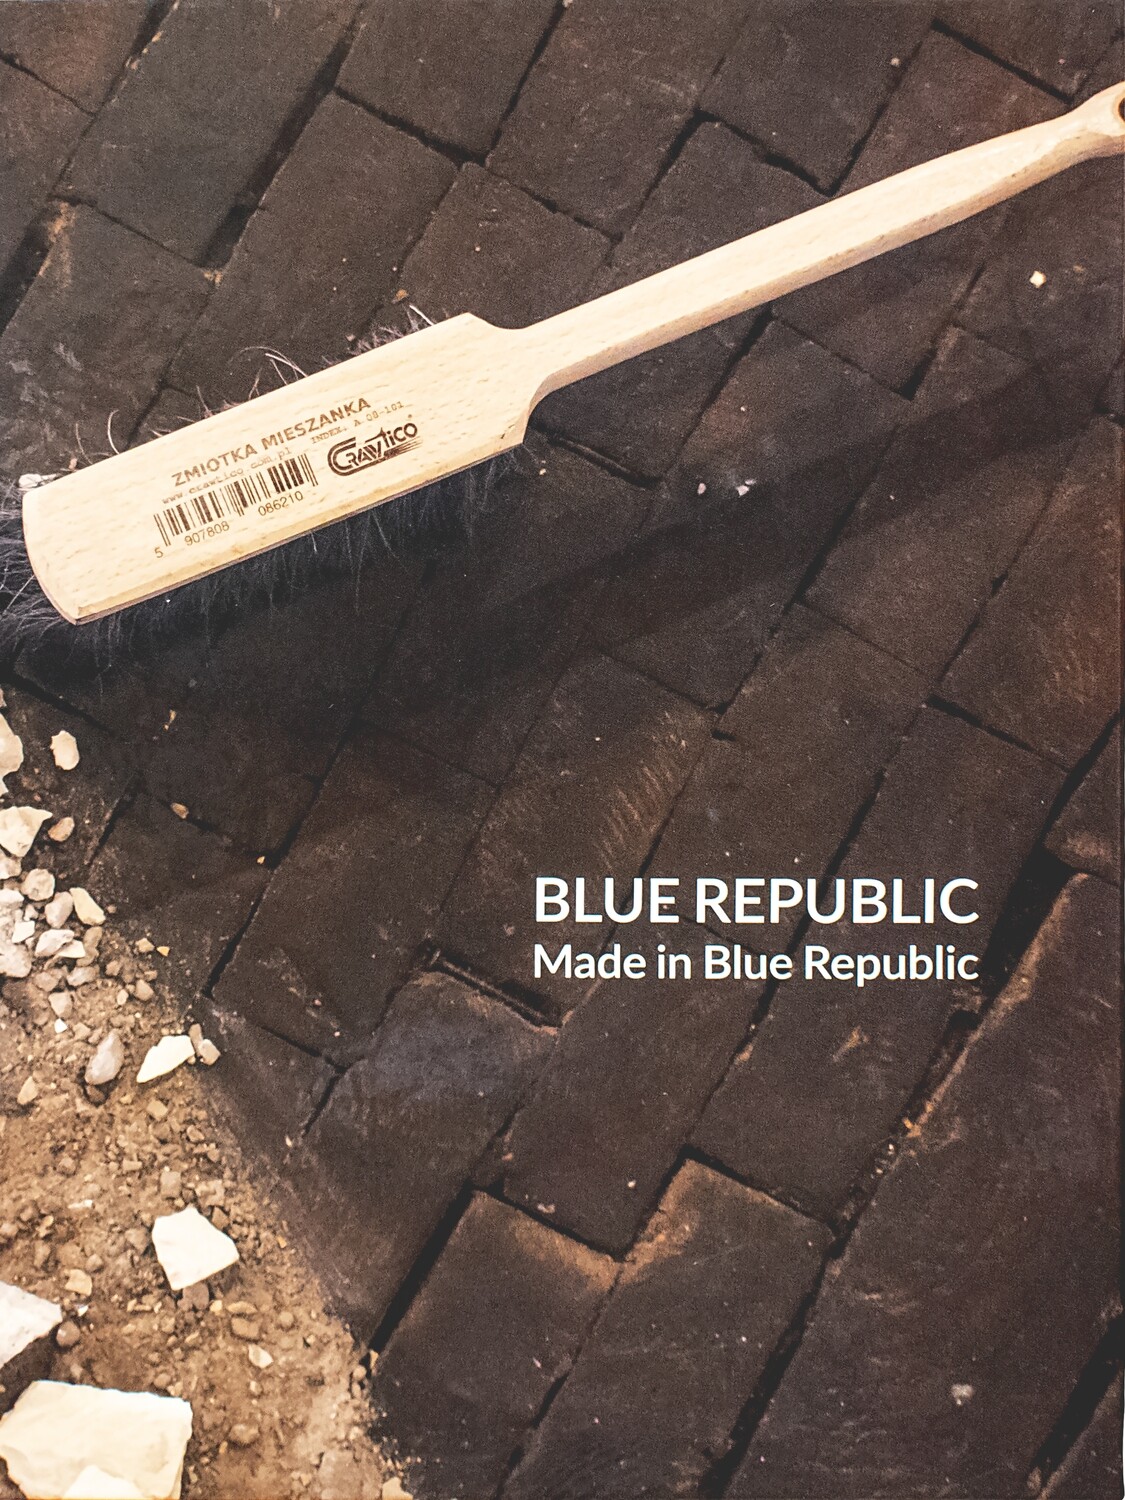 BLUE REPUBLIC: Made in Blue Republic